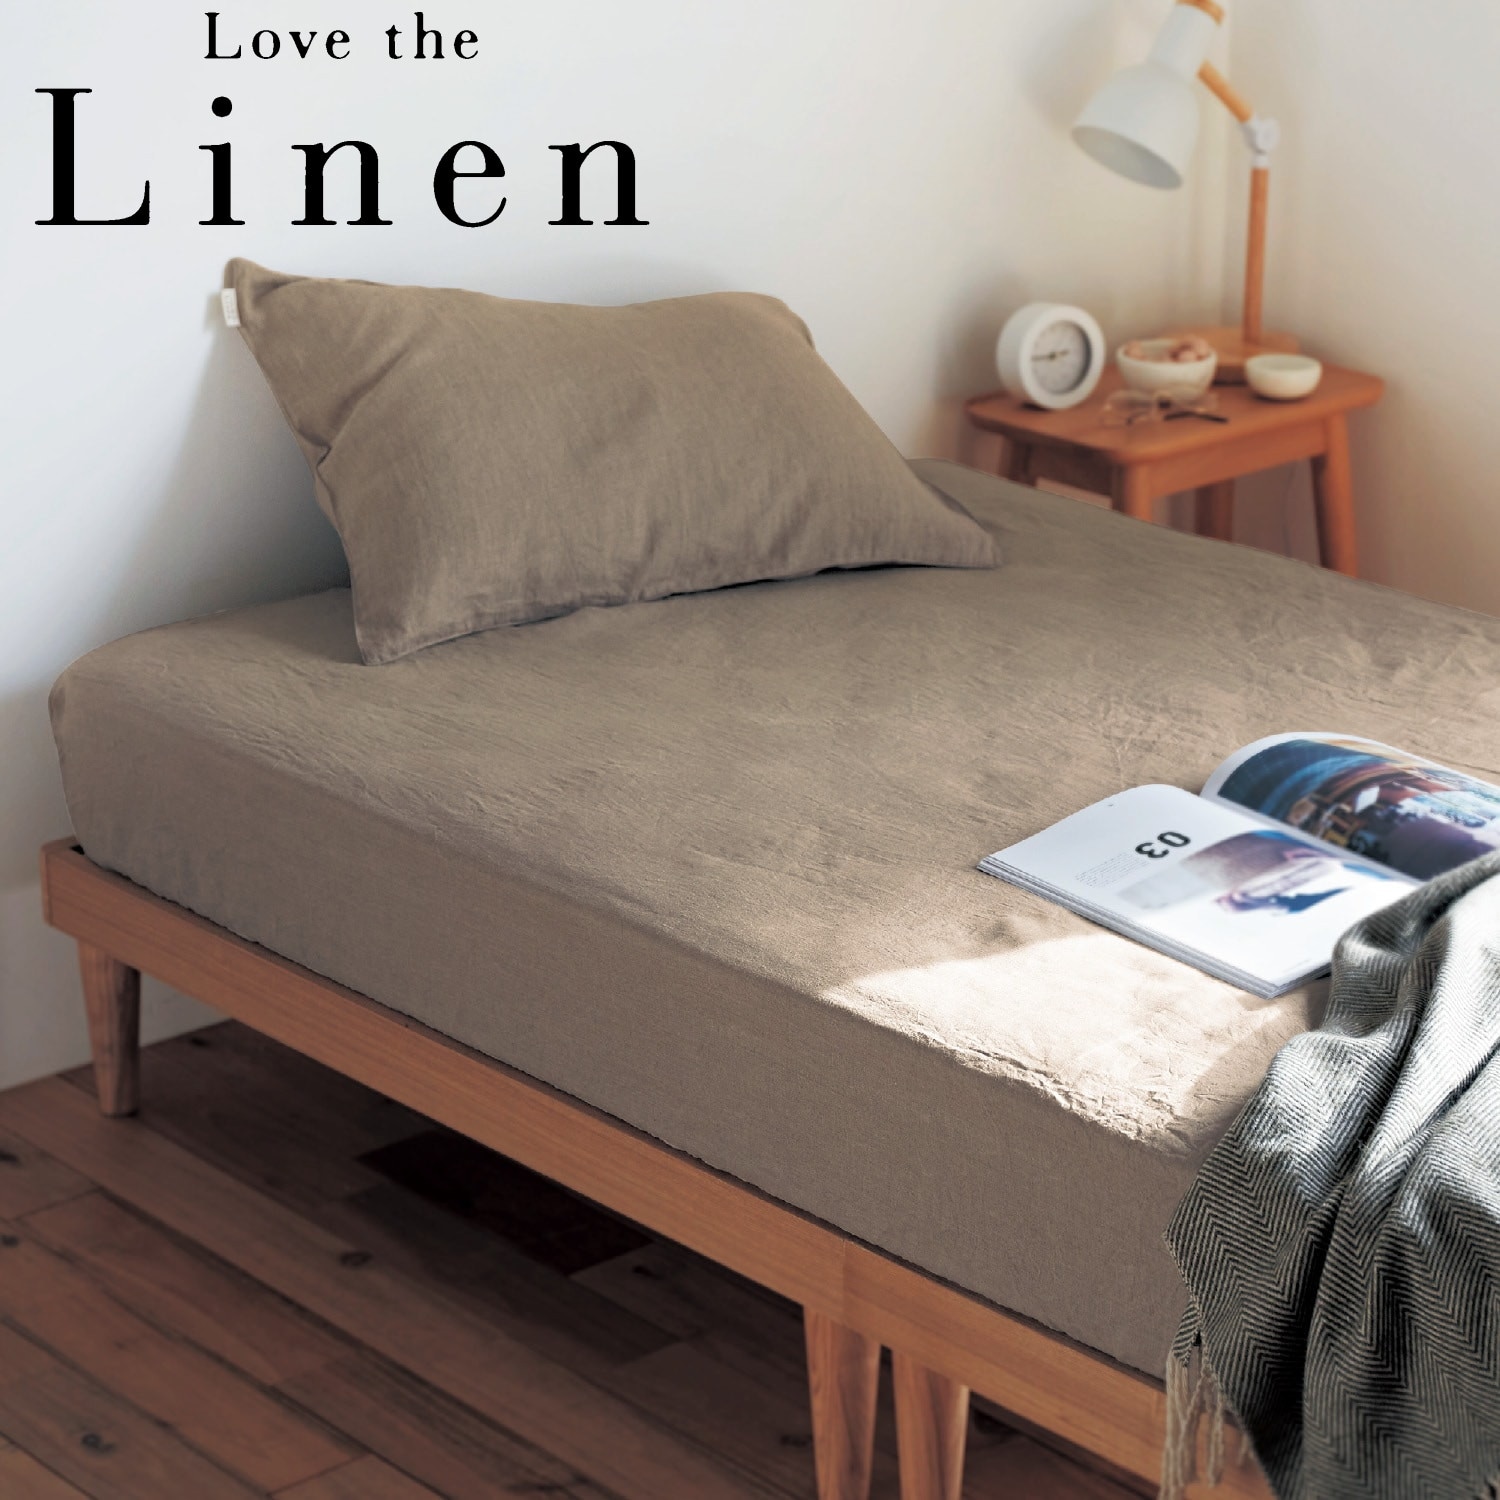 【ラブザリネン/Love the Linen】【5月7日までまとめ買いでお得】 フレンチリネンボックスシーツ 【選べる7色】